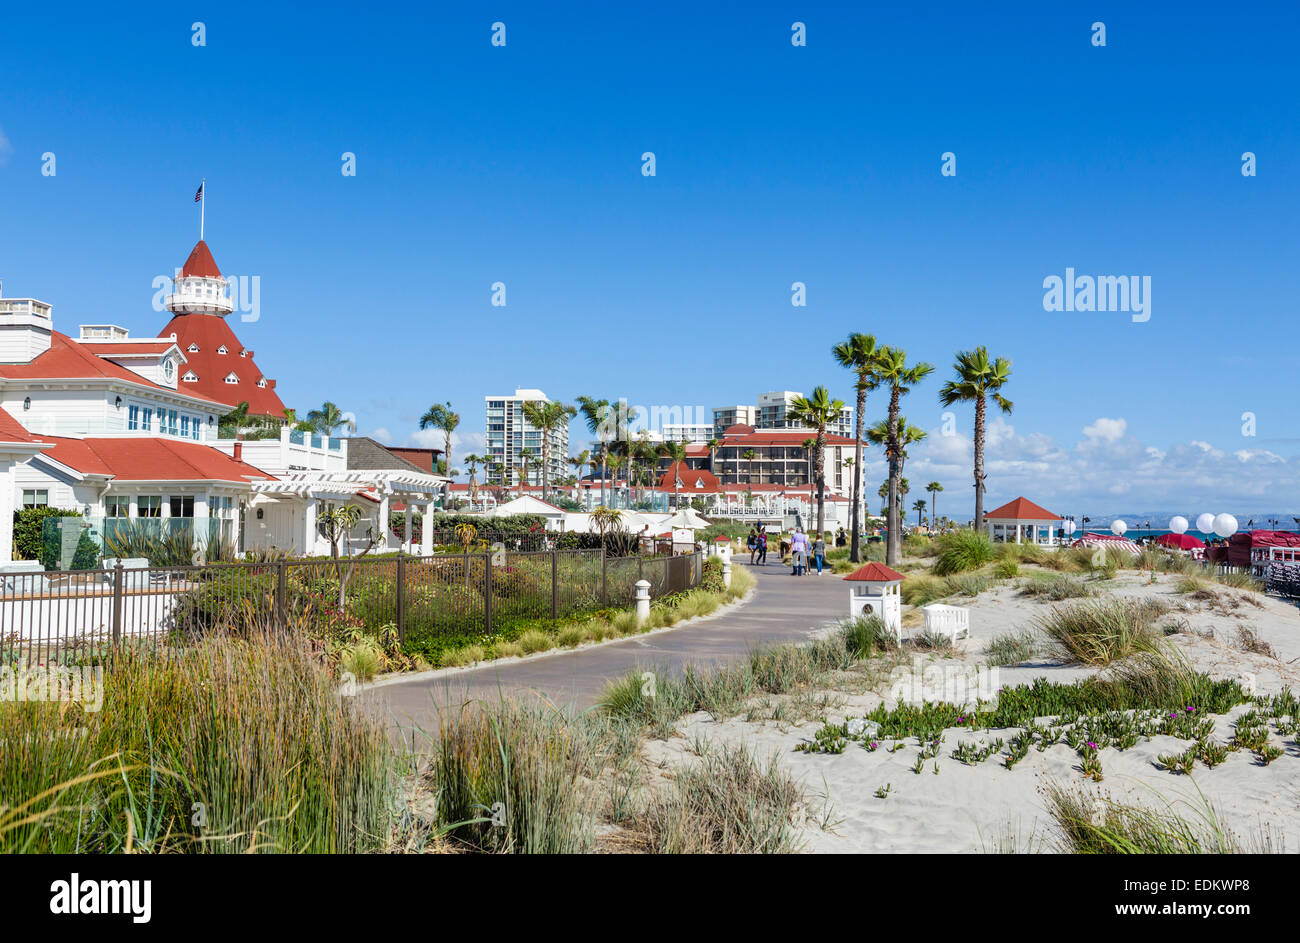 L'hôtel del Coronado de la plage, plage de Coronado, San Diego, California, USA Banque D'Images